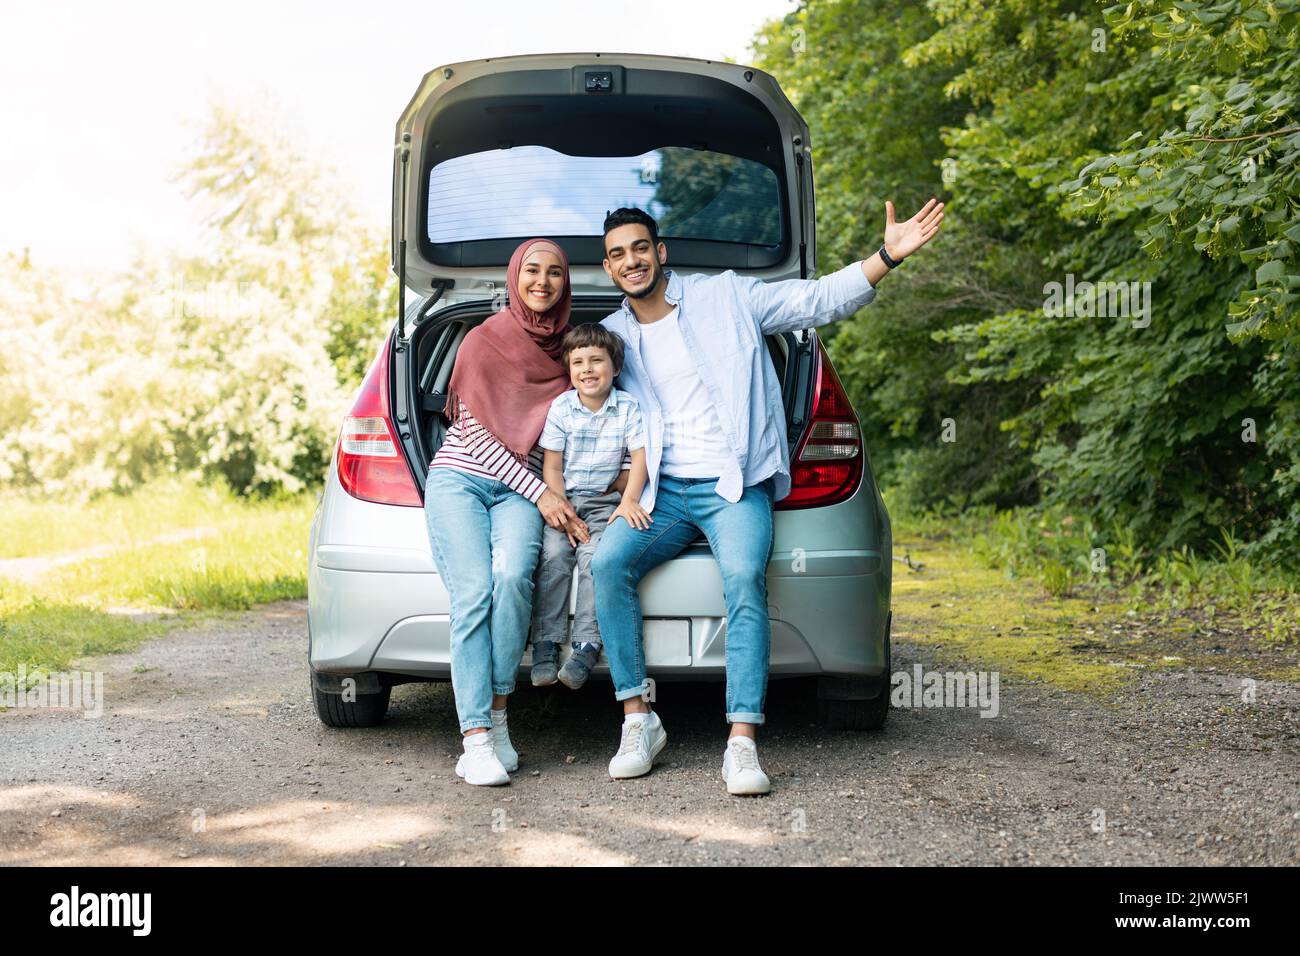 Trayecto automático positivo. Feliz milenaria árabe tipo y dama en hijab con el bebé, sentarse en el maletero del coche y gesturing Foto de stock